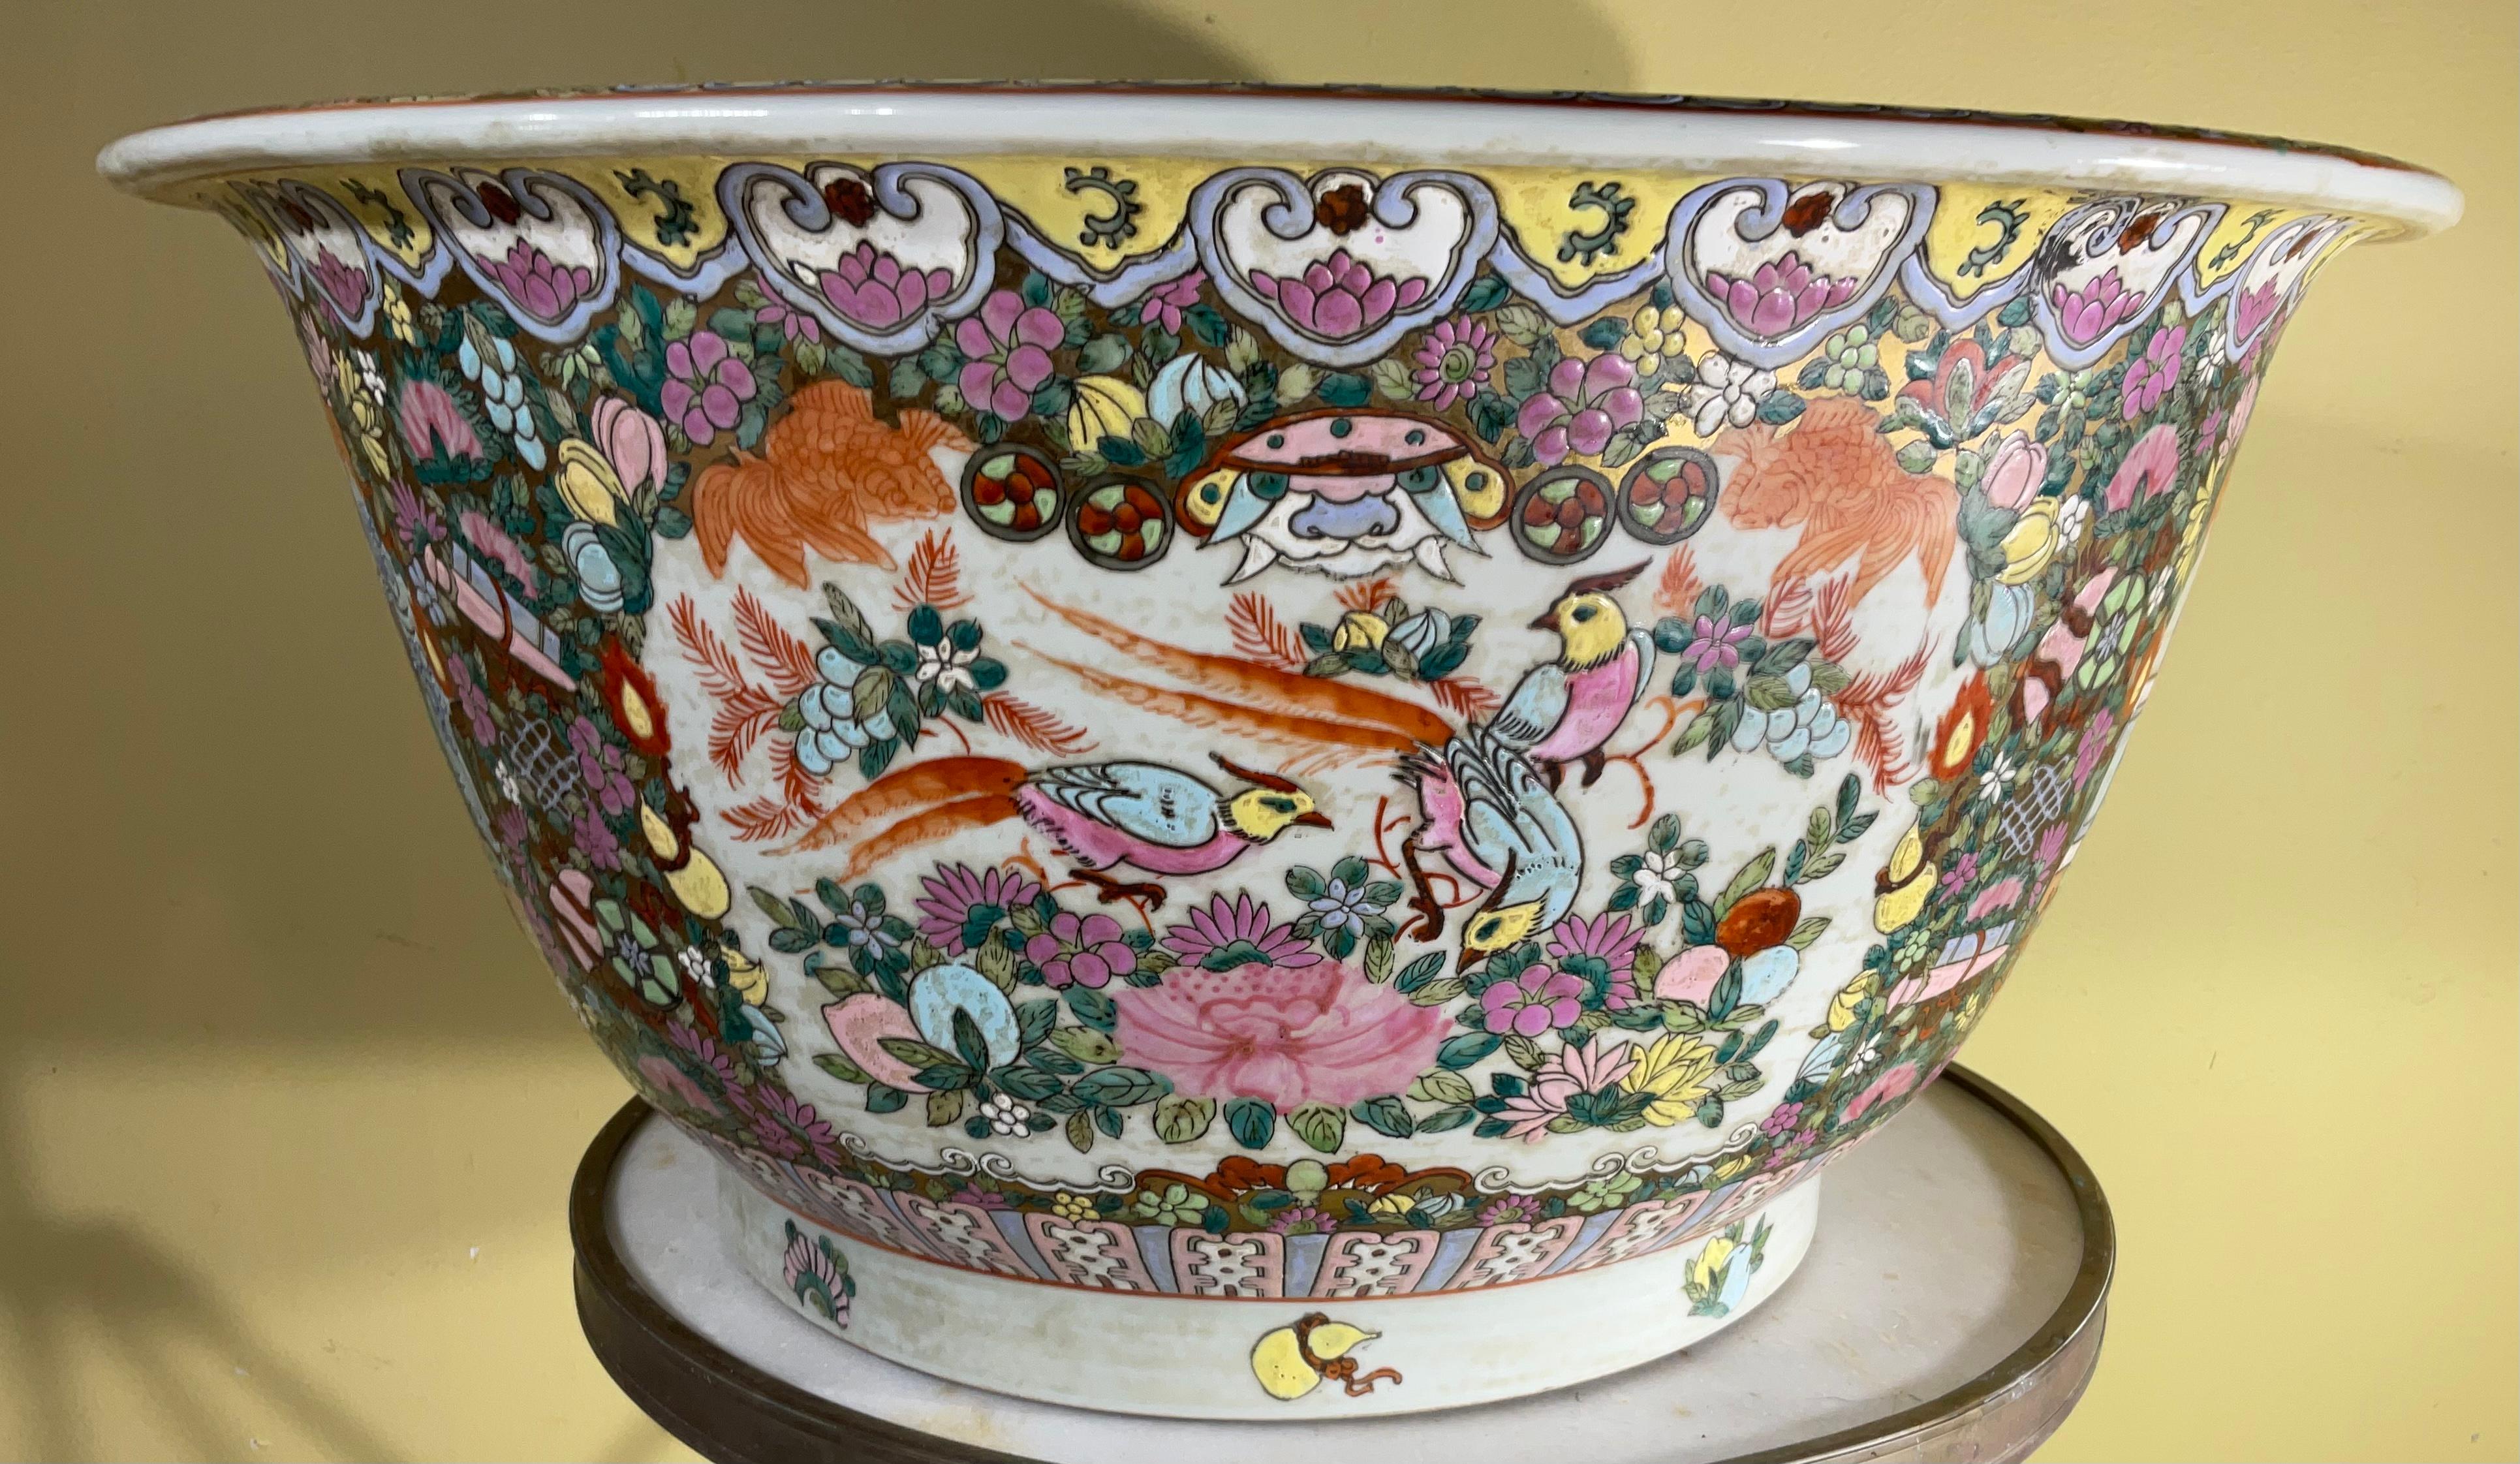 Grand bocal à poisson coloré en porcelaine chinoise vintage. Scènes classiques orientales avec une famille chinoise, des oiseaux, des fleurs et des motifs chinois. Il est peint à l'intérieur et peut être utilisé comme pièce centrale, jardinière ou